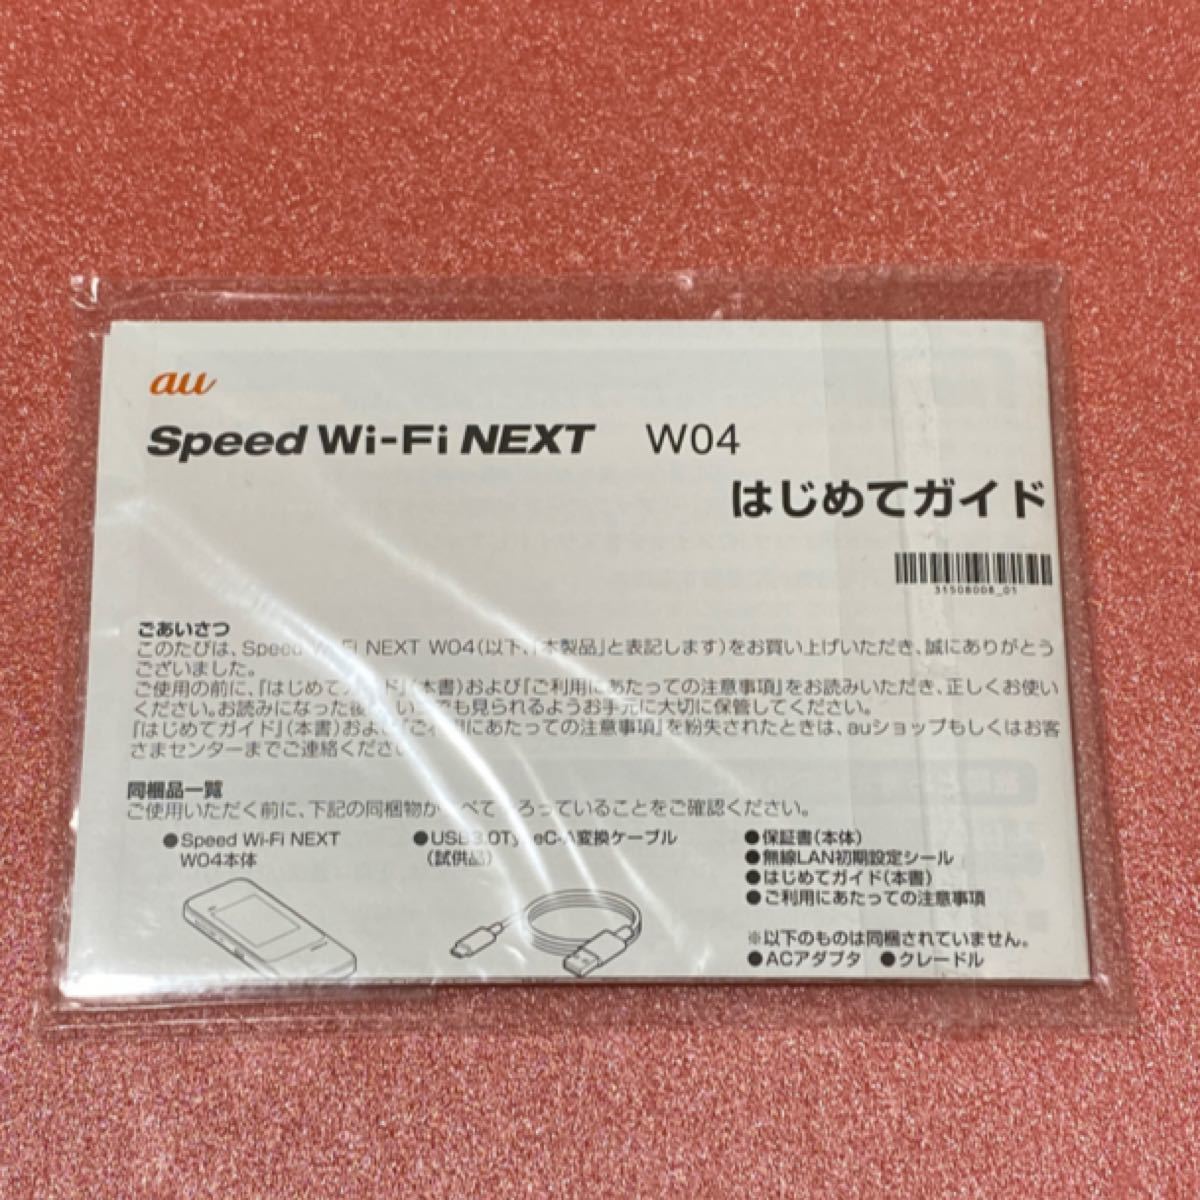 au Speed Wi-Fi NEXT W04